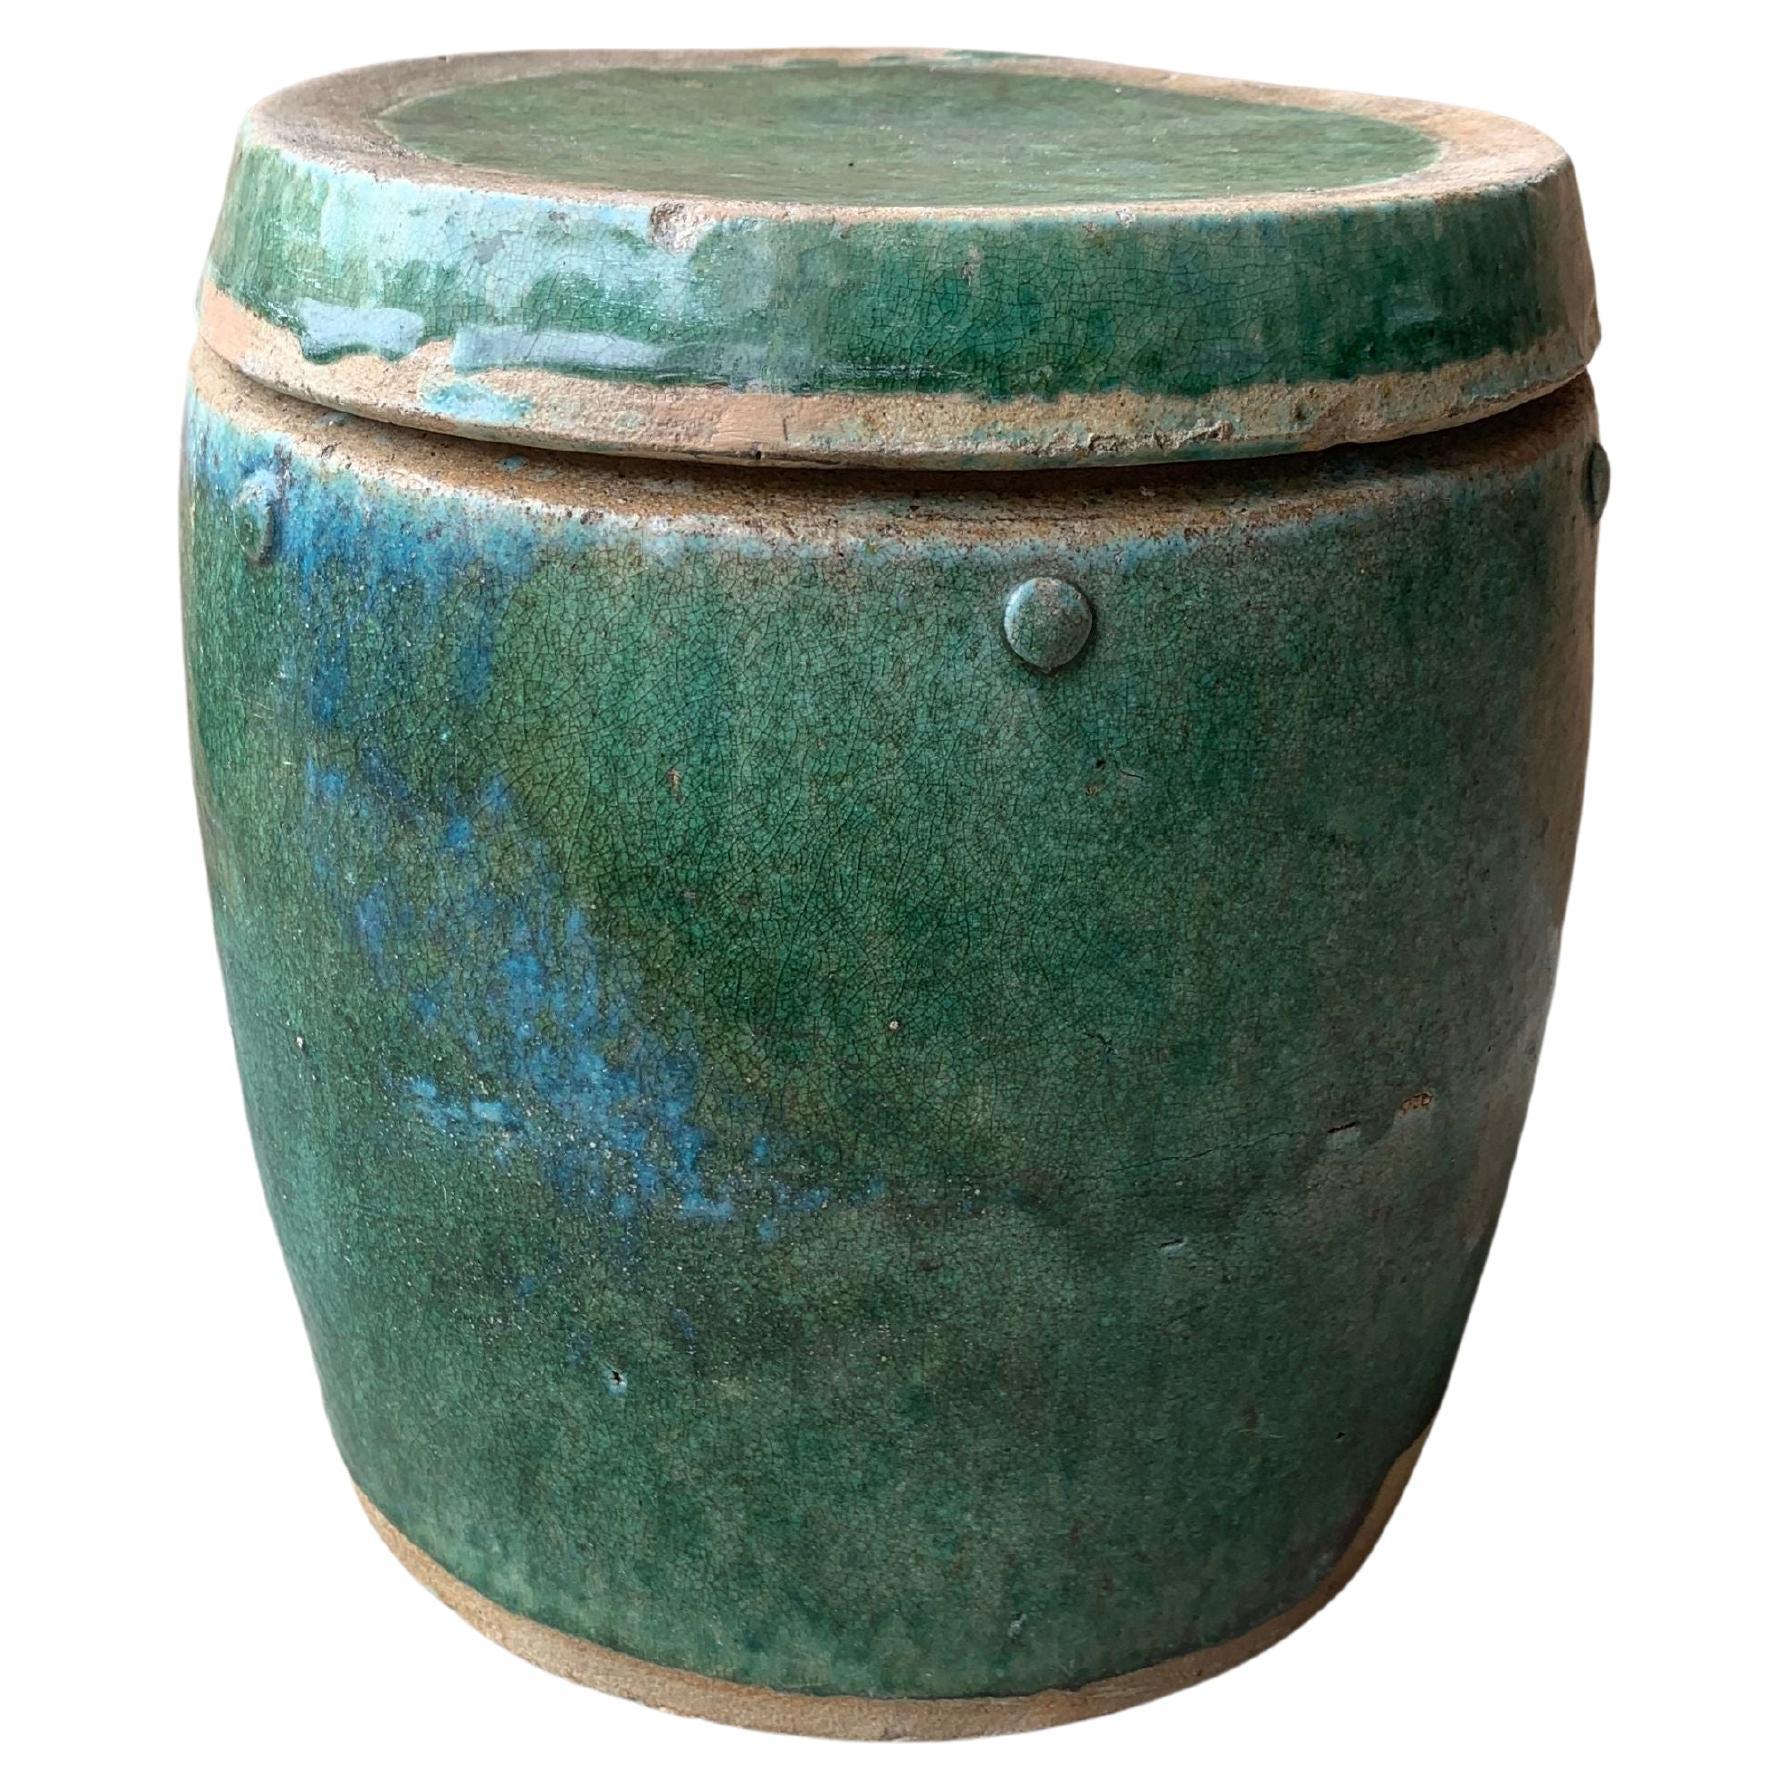 Chinesisches glasiertes Keramikgefäß / Pflanzgefäß in Schiwangrün, um 1900